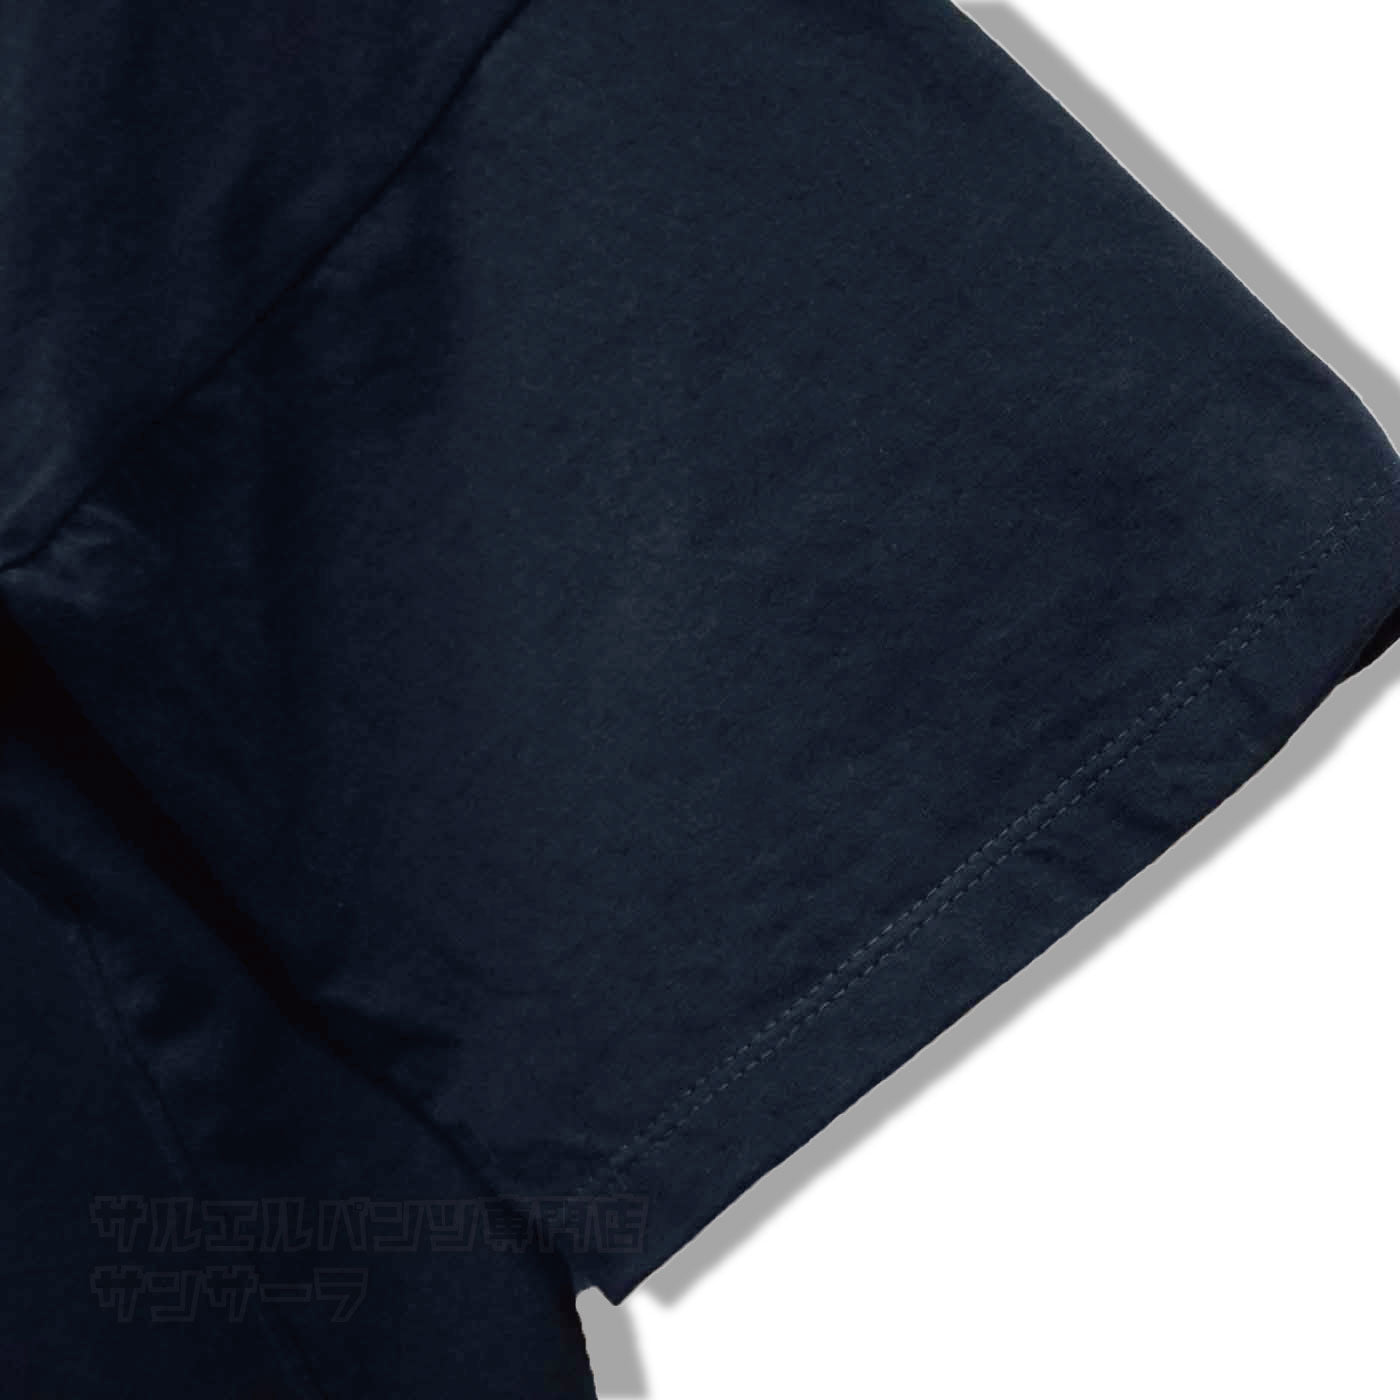 エスニック ドルマンシャツ タイダイ柄 Tシャツ 半袖 5分丈 トップス メンズ レディース ユニセックス 大きめサイズ ゆったり ビッグサイズ ビッグシルエット フェス アジアン